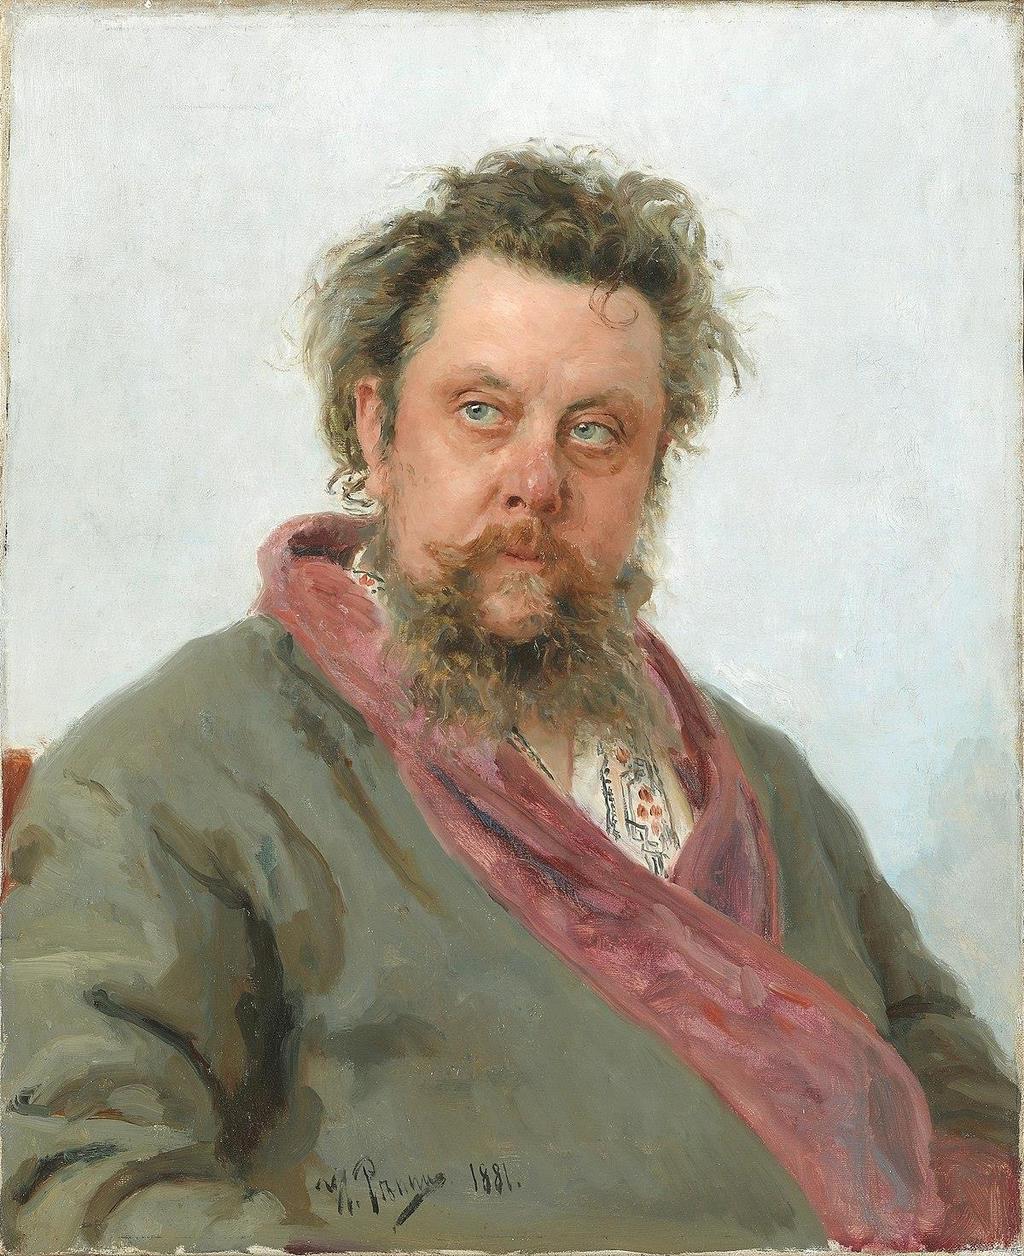 IL SELVAGGIO Modest Musorgskij (1839 1881) RECUPERO DELLA GRANDE STORIA RUSSA CON UNA MUSICALITA PROFONDA E SELVAGGIA